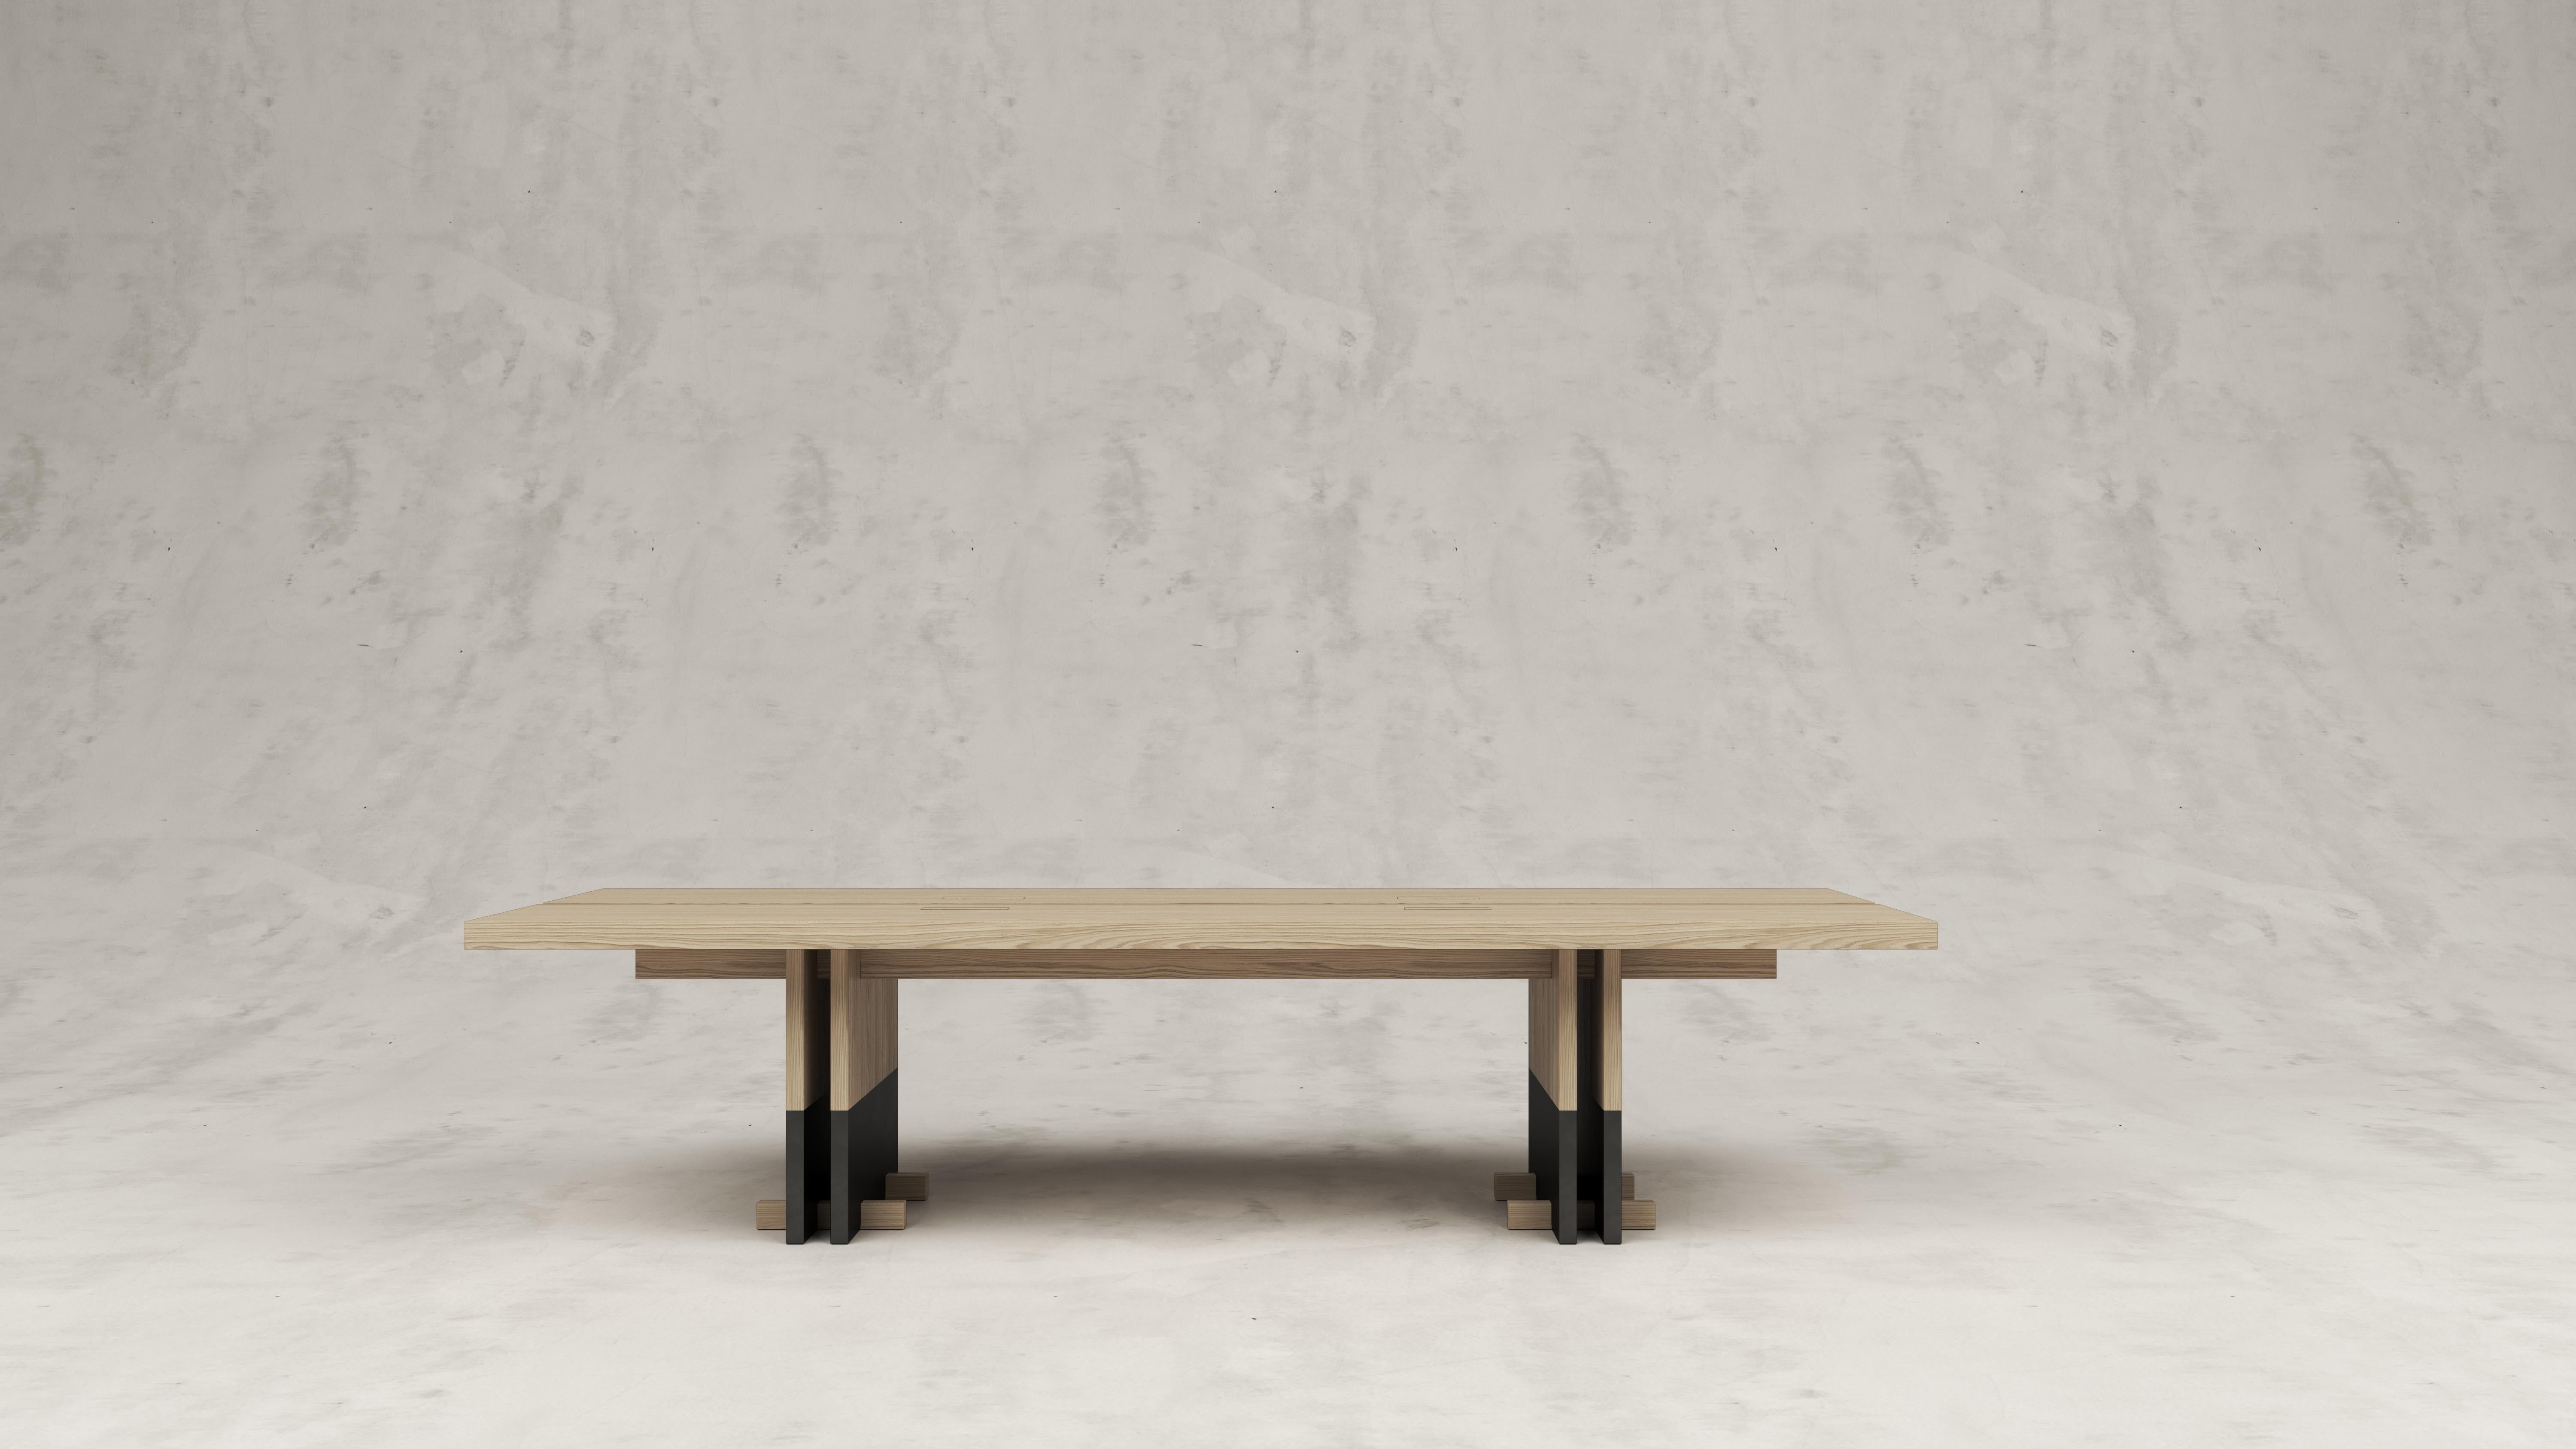 Table de salle à manger en bois Rift par Andy Kerstens
Dimensions : L 240 x P 98 x H 74 cm : L 240 x P 98 x H 74 cm
MATERIAL : Chêne blanchi, revêtement en poudre inox
Petits pieds optionnels aux pieds de la table.
Fabriqué à la main en